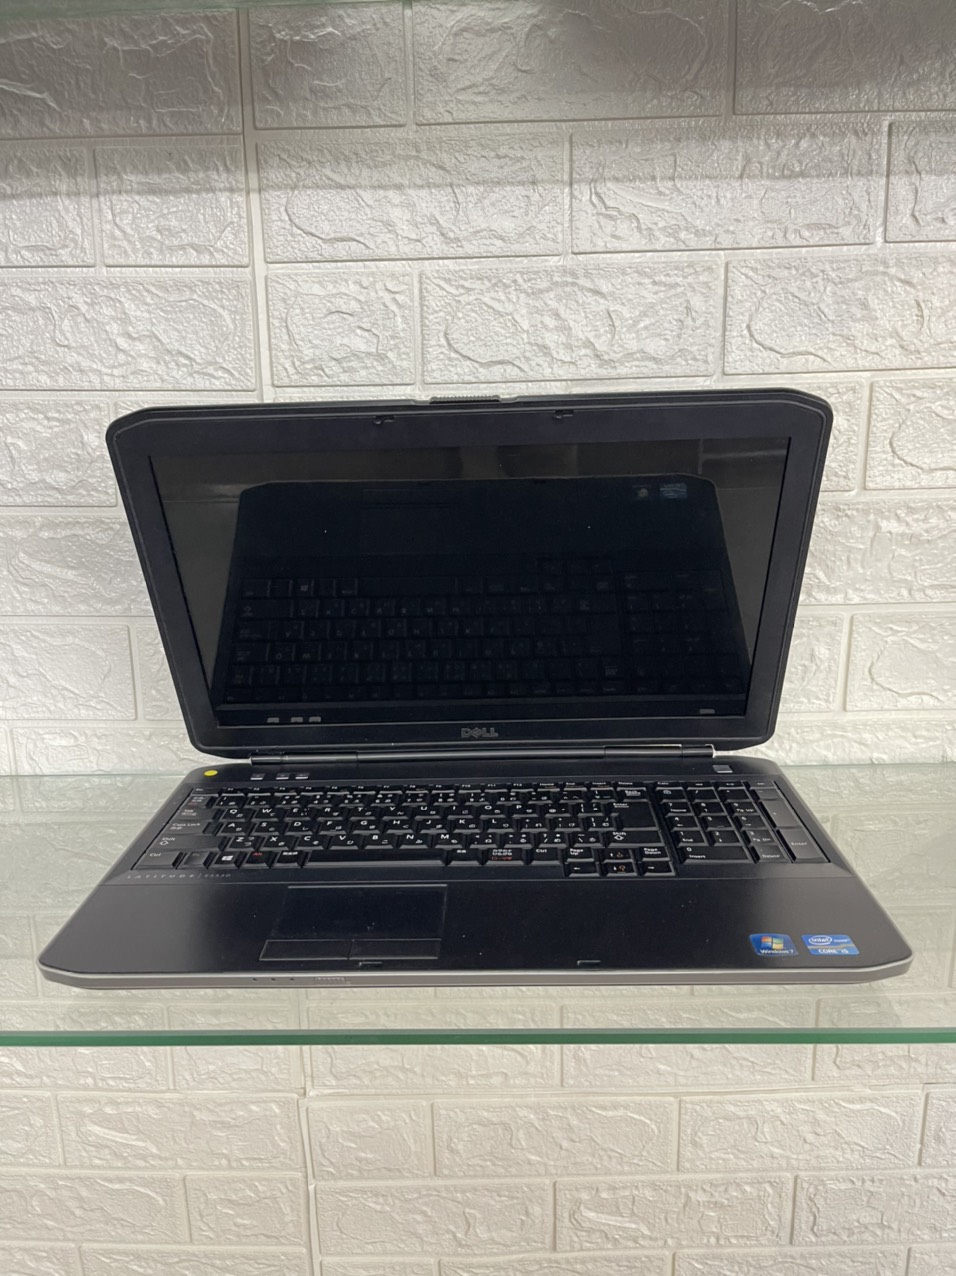 Mua Bán Laptop Cũ dell latitude e5520 Core i5 Giá Rẻ Tại TPHCM